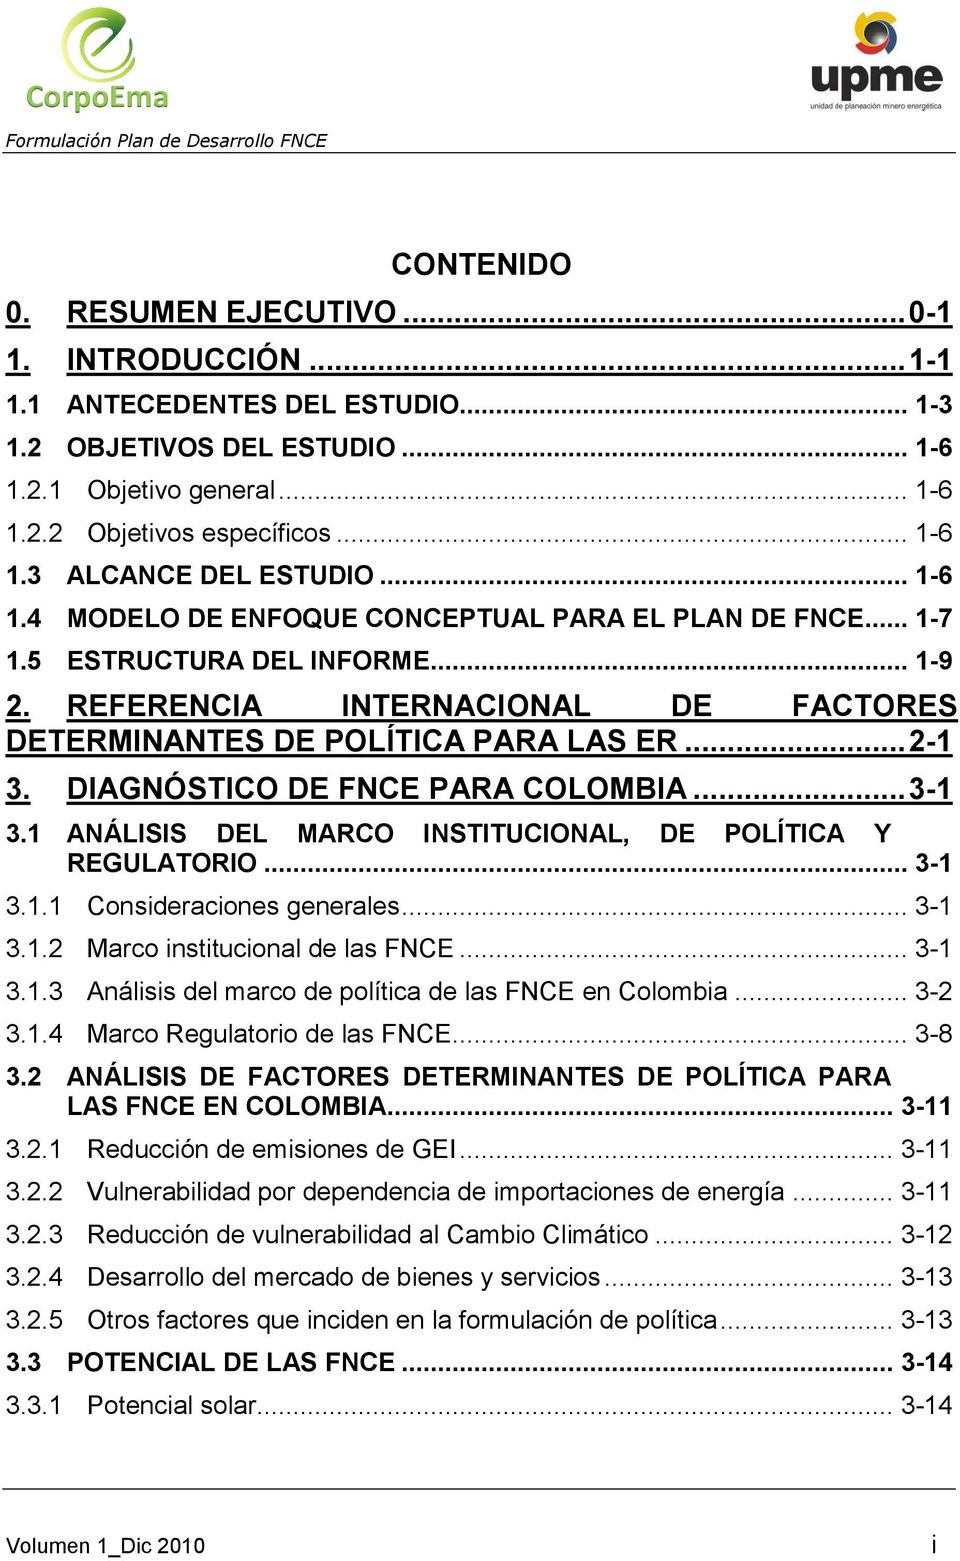 DIAGNÓSTICO DE FNCE PARA COLOMBIA... 3-1 3.1 ANÁLISIS DEL MARCO INSTITUCIONAL, DE POLÍTICA Y REGULATORIO... 3-1 3.1.1 Consideraciones generales... 3-1 3.1.2 Marco institucional de las FNCE... 3-1 3.1.3 Análisis del marco de política de las FNCE en Colombia.